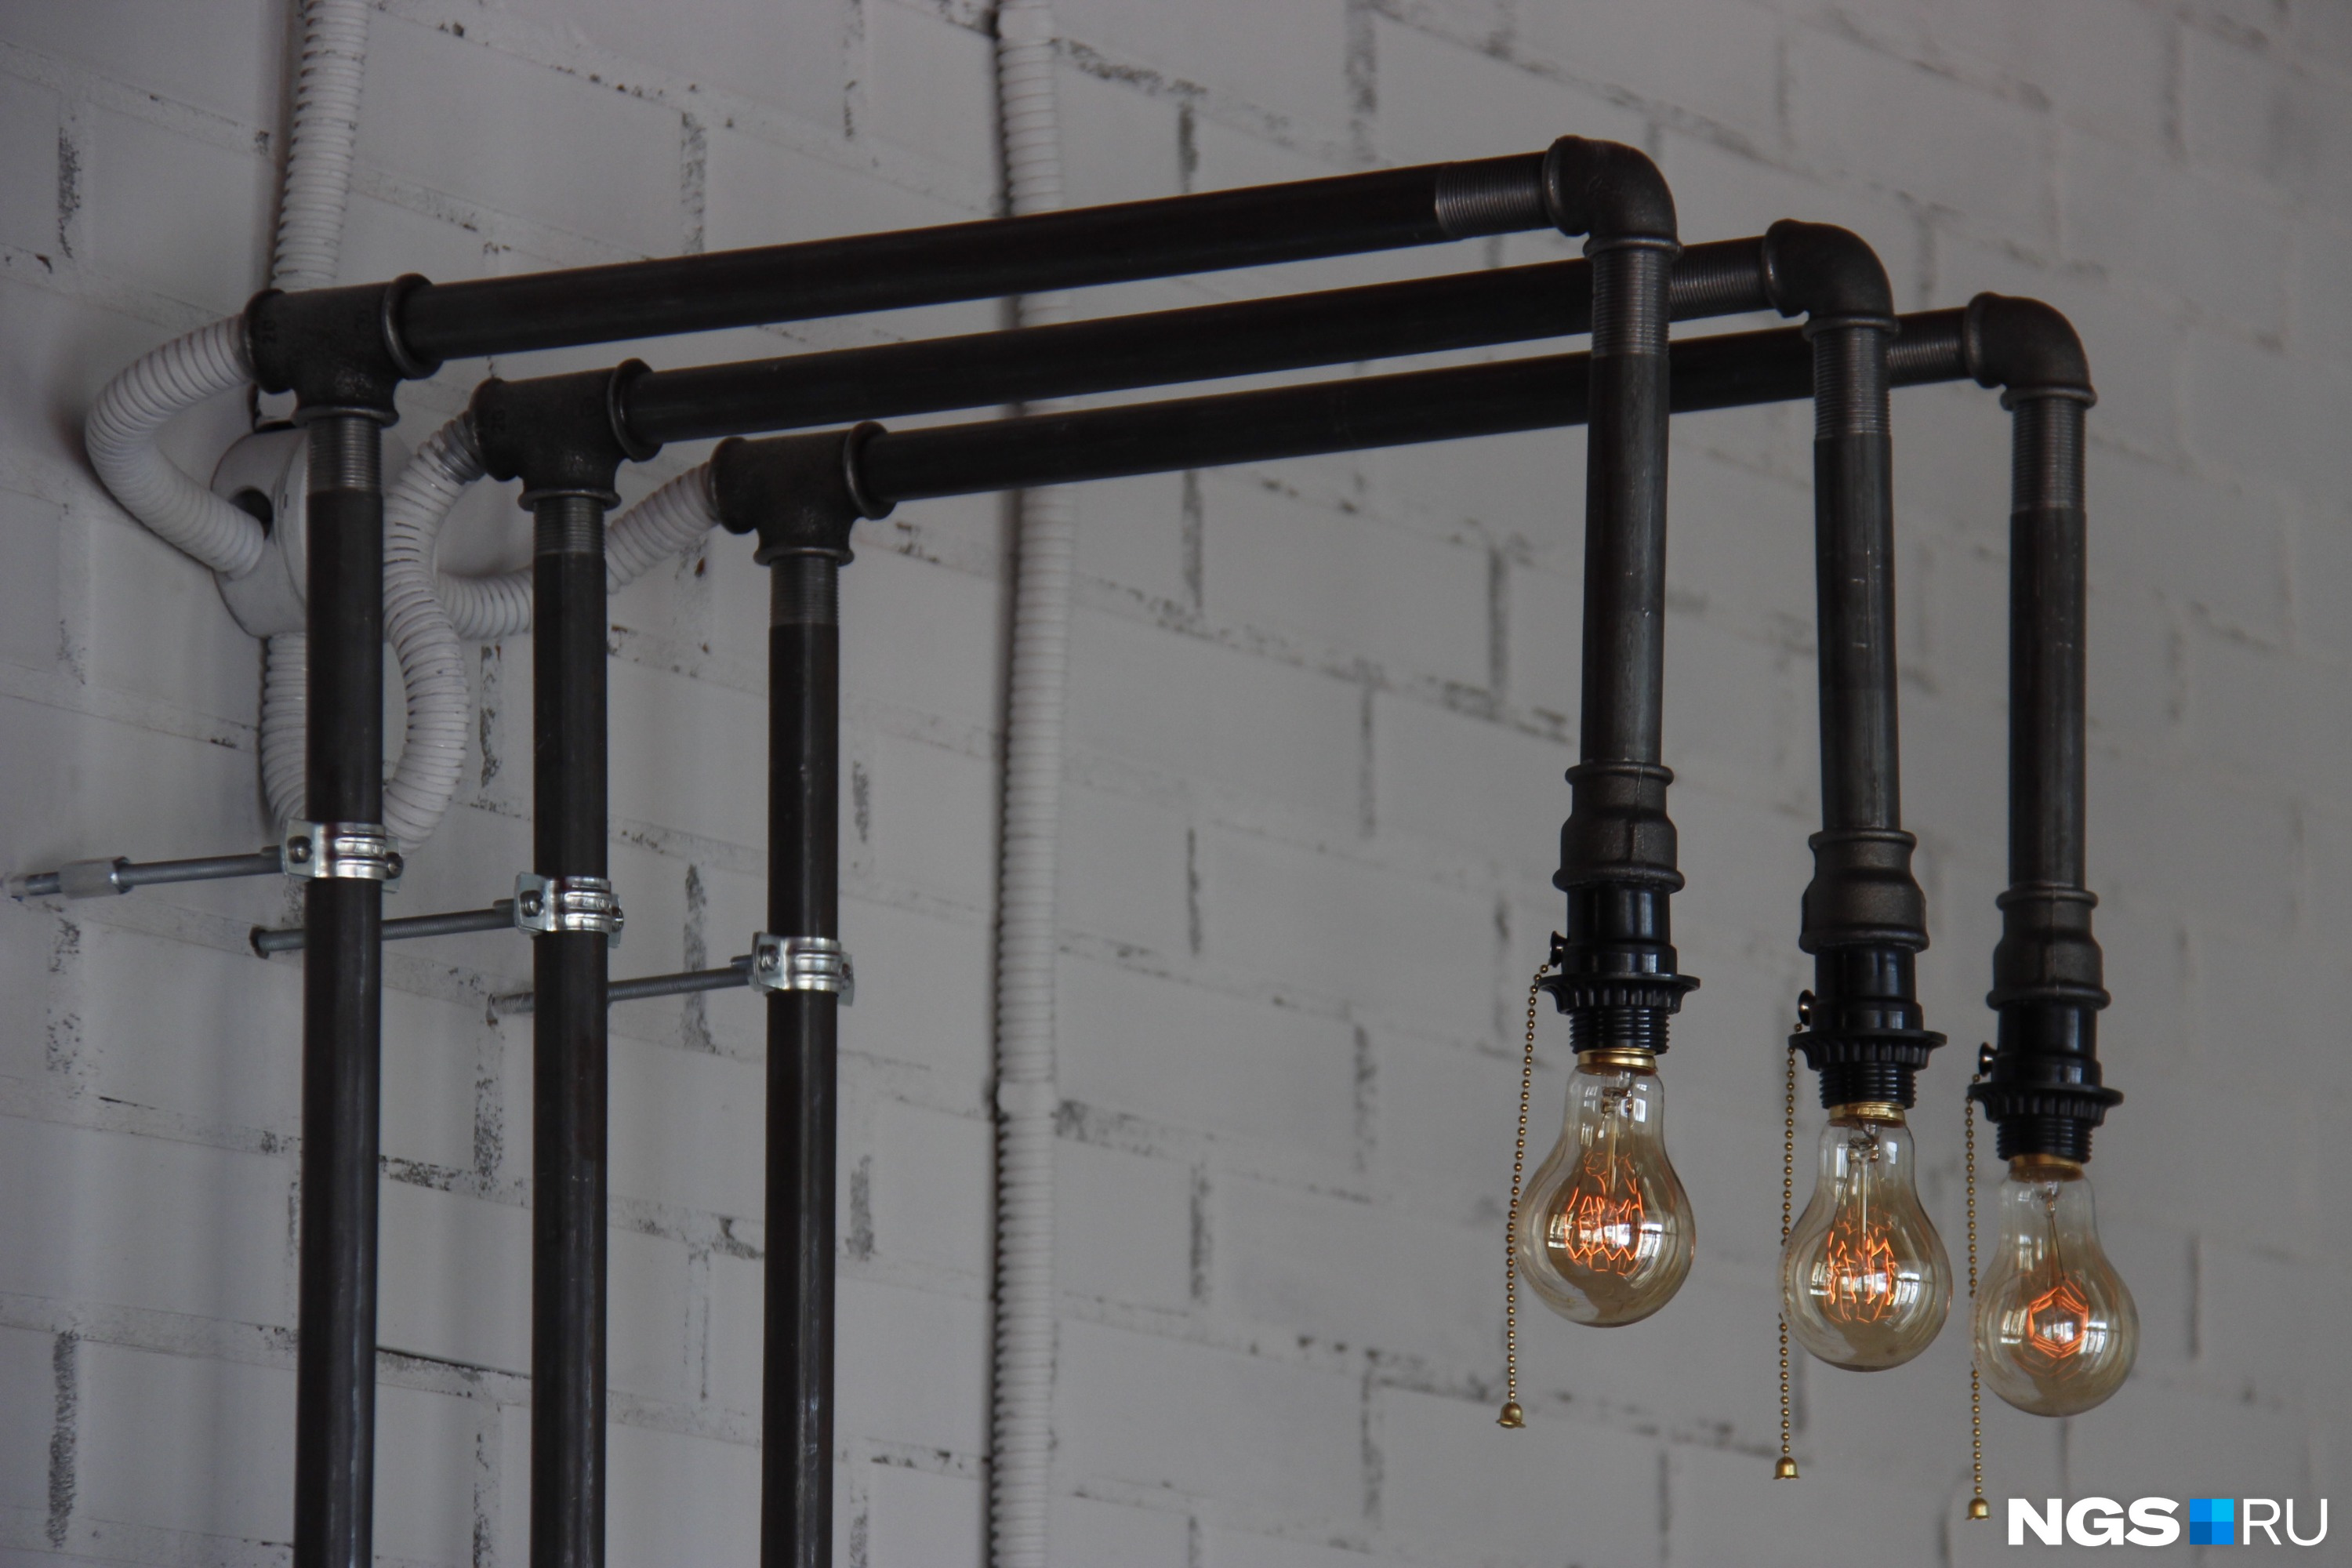 Светильники в баре сделаны из водопроводных труб